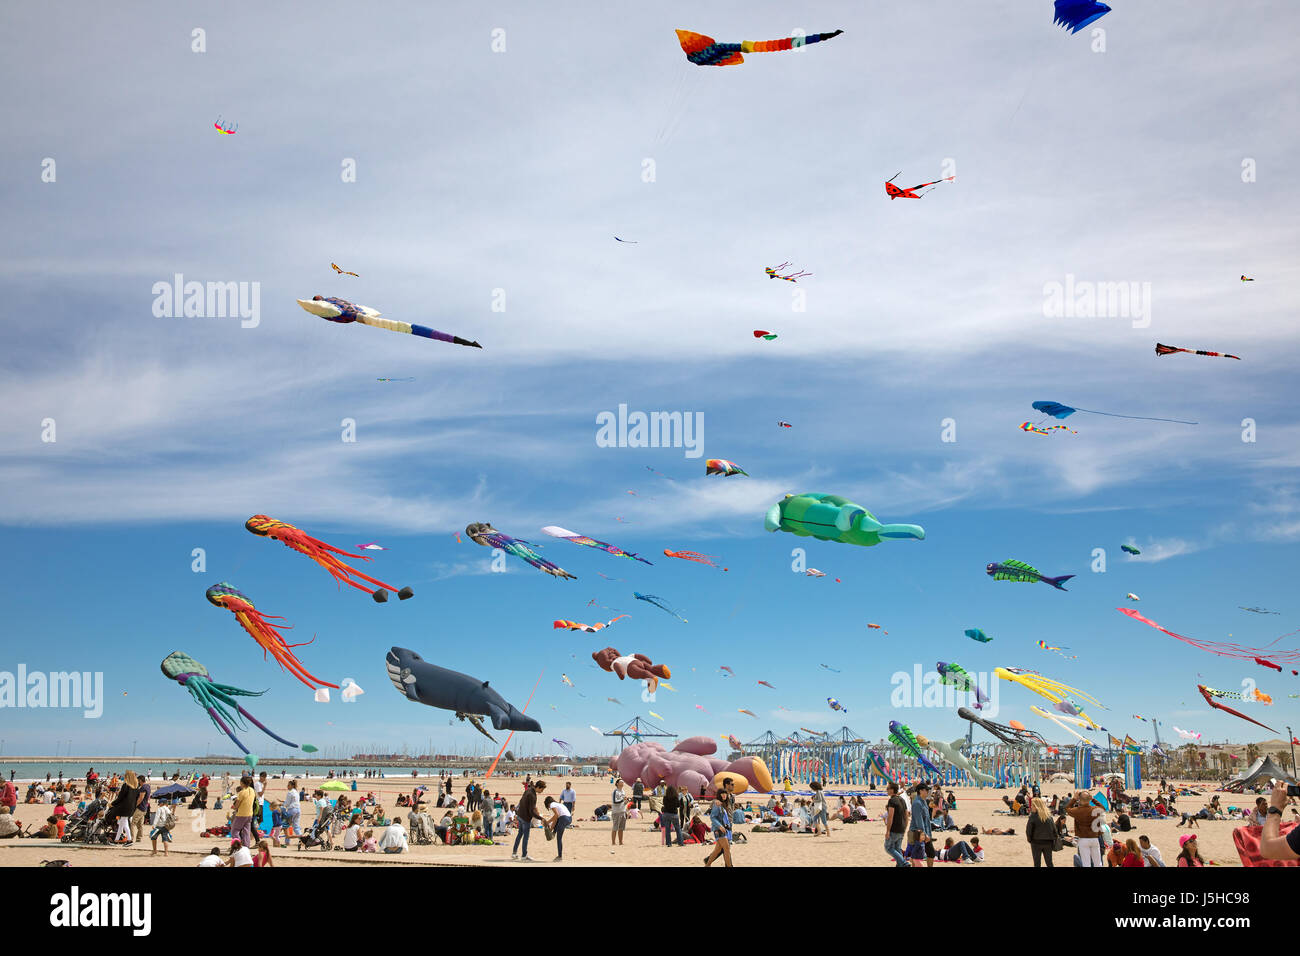 The kite festival (El Festival del viento) in Valencia, Spain Stock Photo